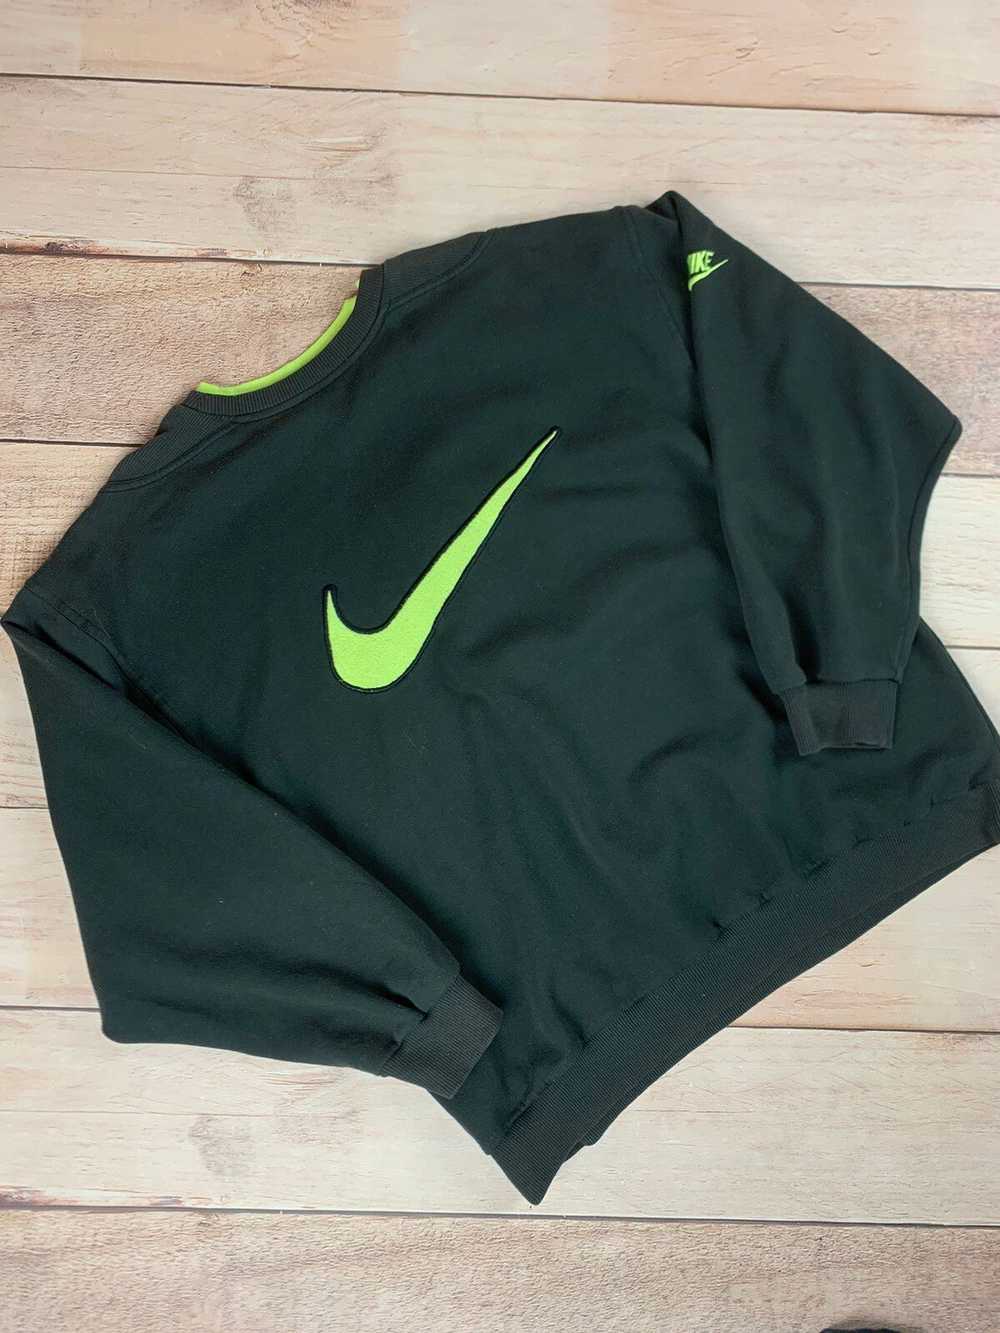 Nike × Other × Soccer Jersey Vintage Nike Premier… - image 2